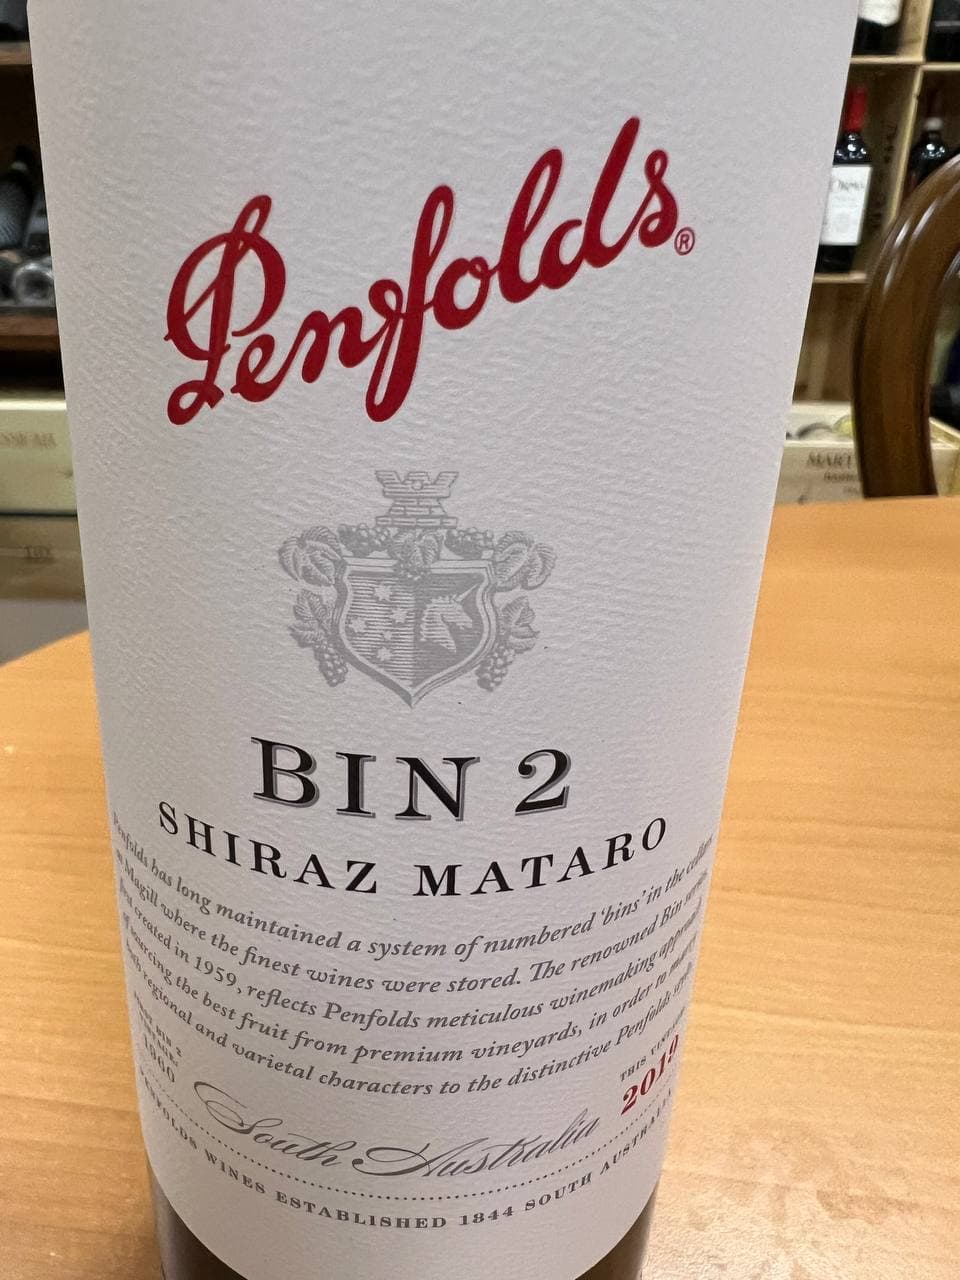 Penfolds Bin 2 2019 Shiraz Mataro